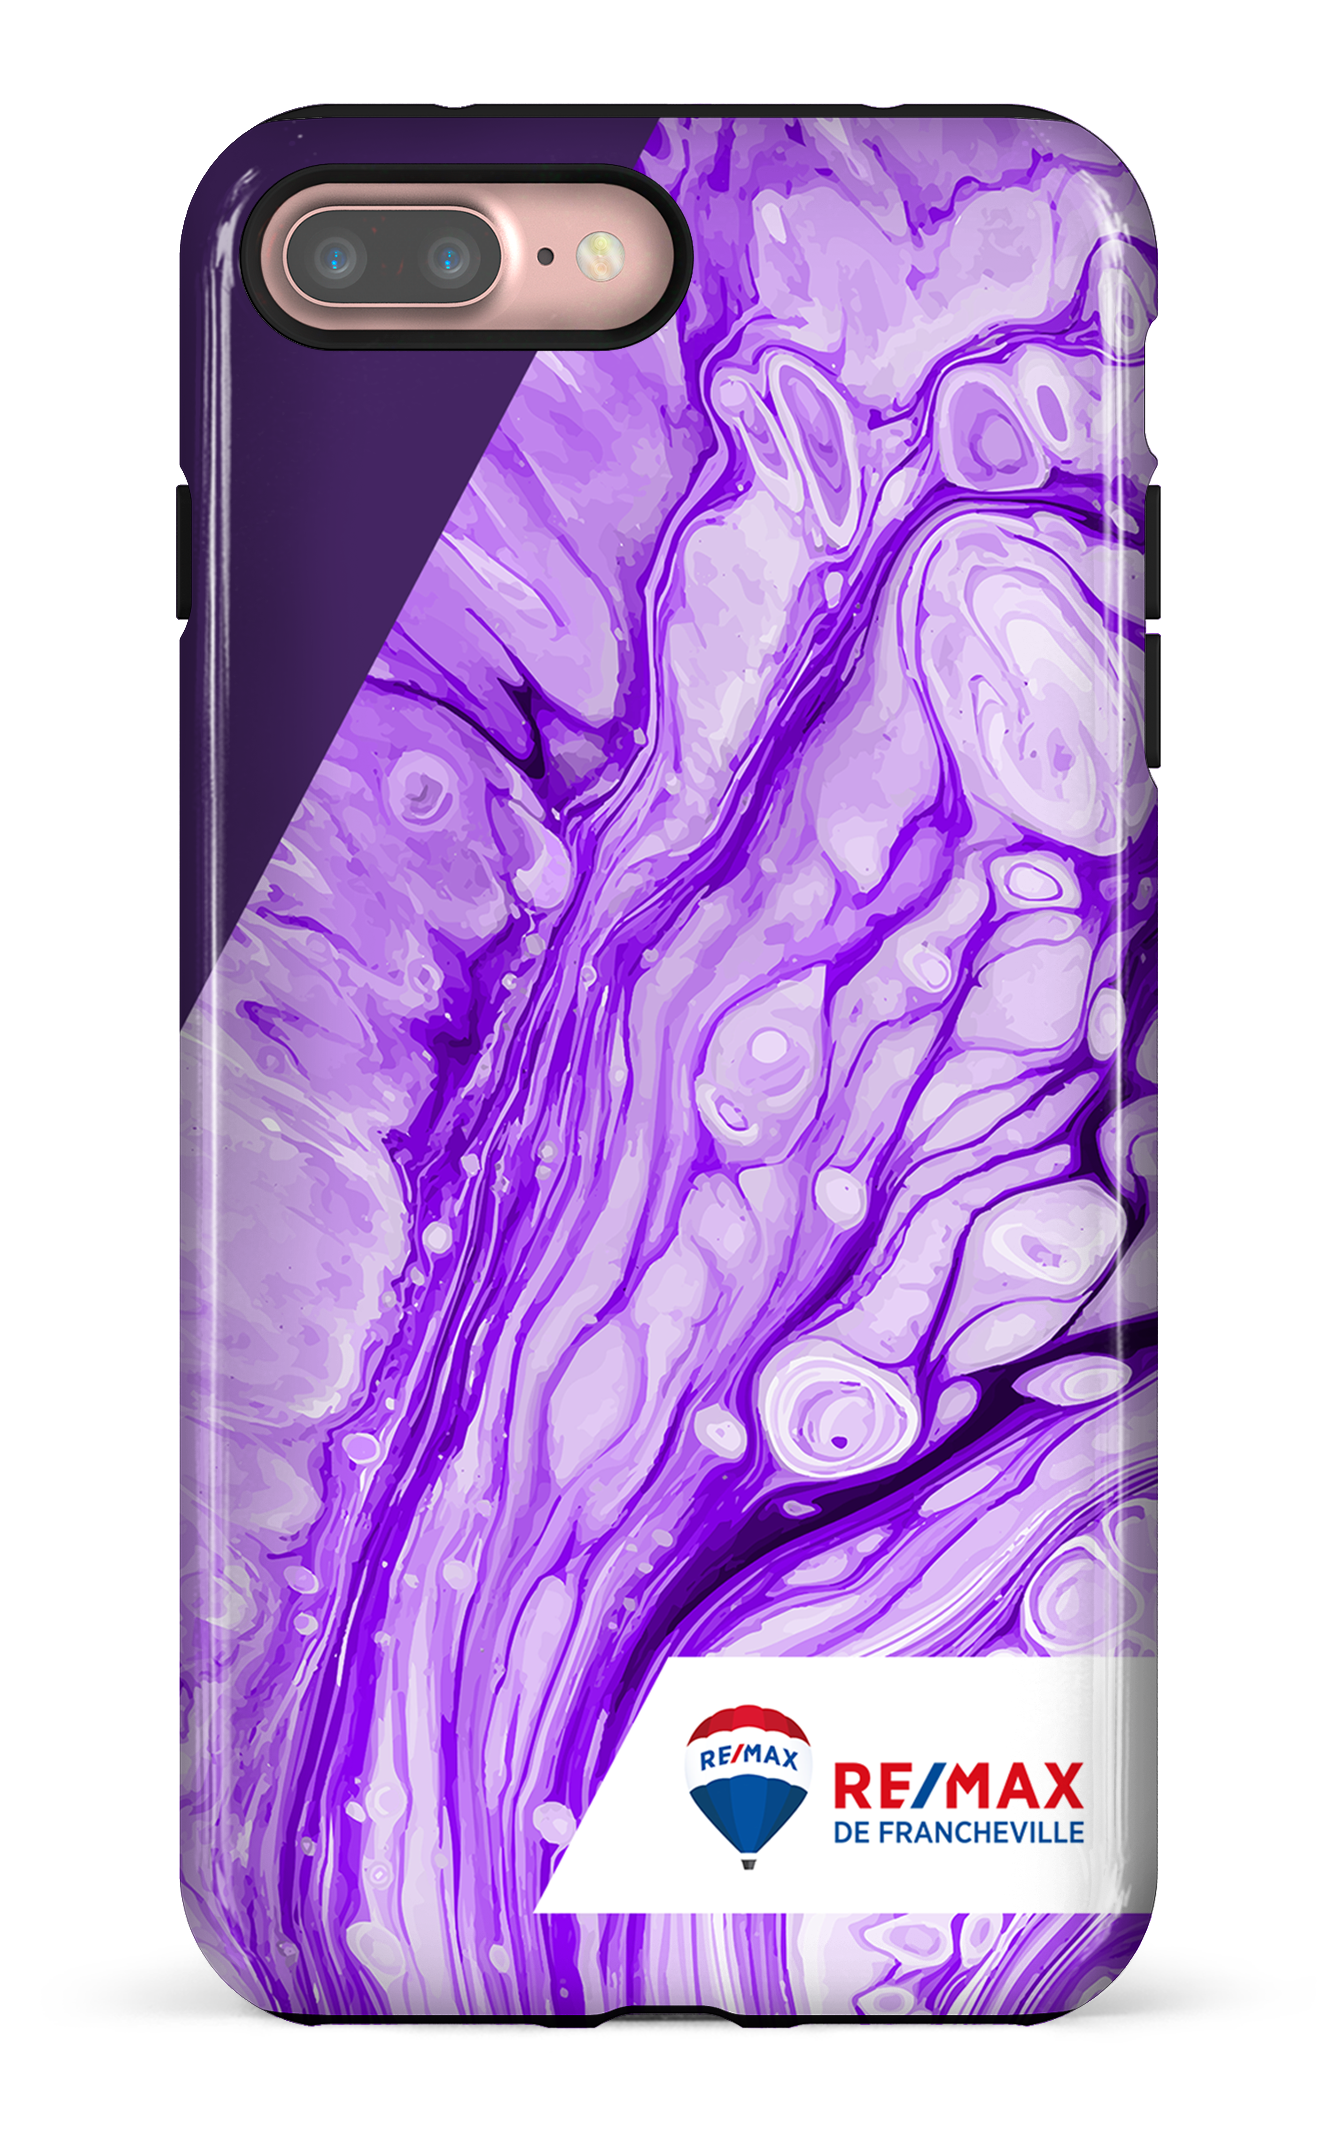 Peinture marbrée claire violette de Francheville - iPhone 7 Plus